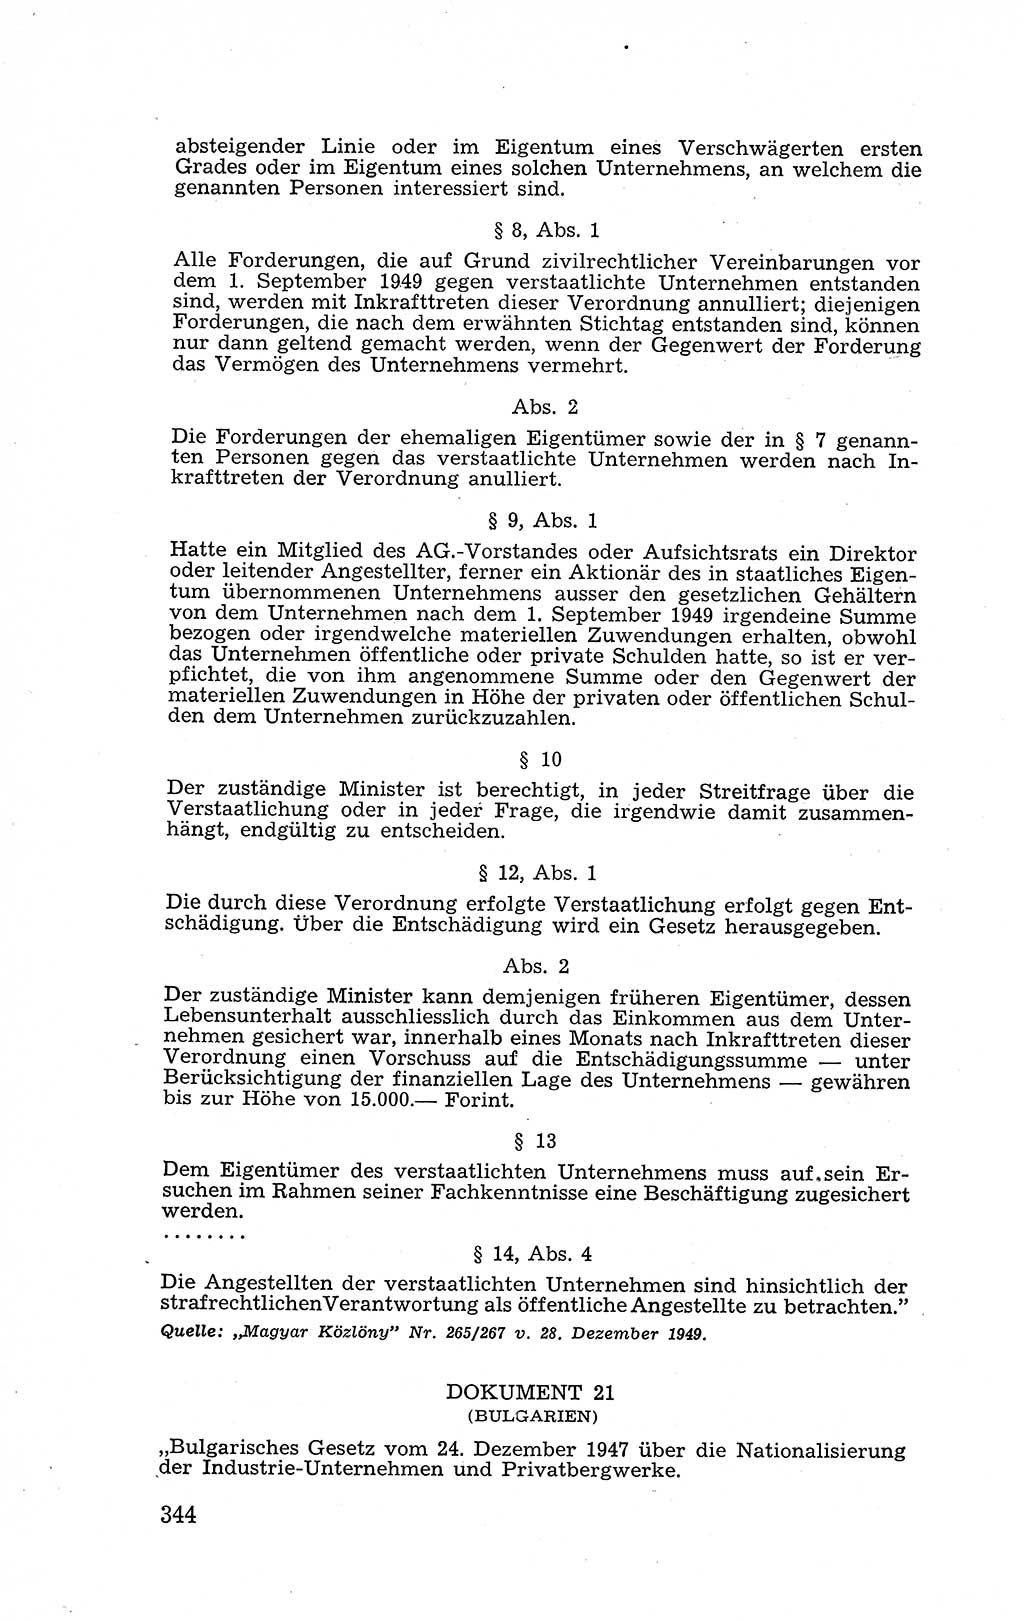 Recht in Fesseln, Dokumente, Internationale Juristen-Kommission [Bundesrepublik Deutschland (BRD)] 1955, Seite 344 (R. Dok. IJK BRD 1955, S. 344)